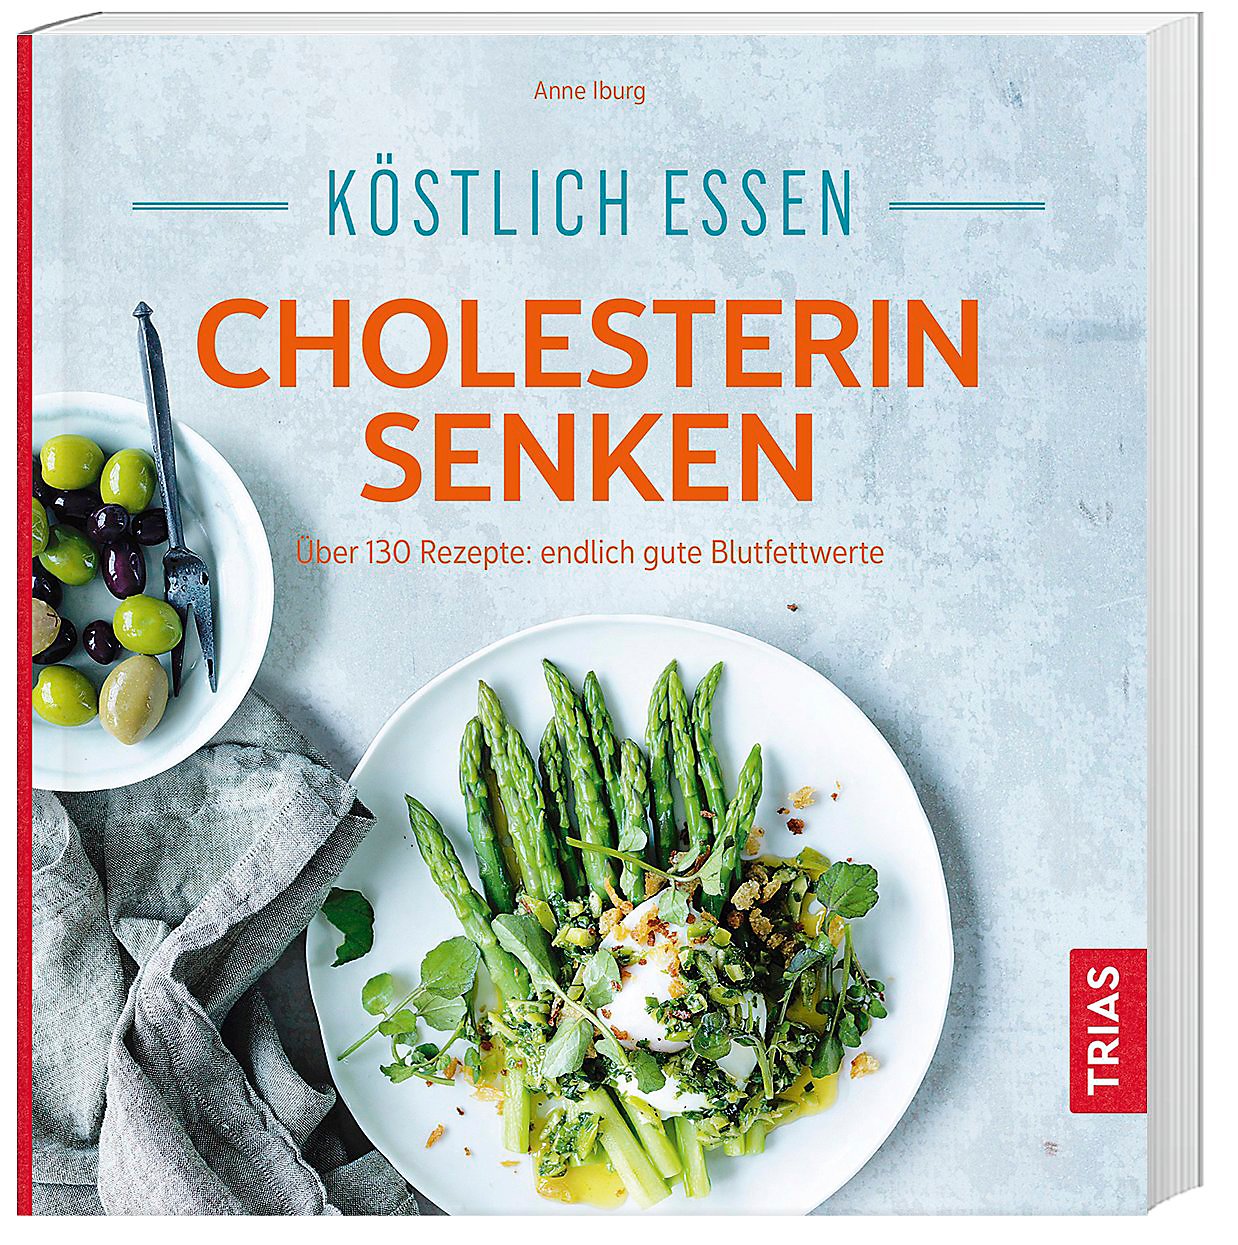 Köstlich essen Cholesterin senken Über 130 Rezepte endlich gute
Blutfettwerte PDF Epub-Ebook